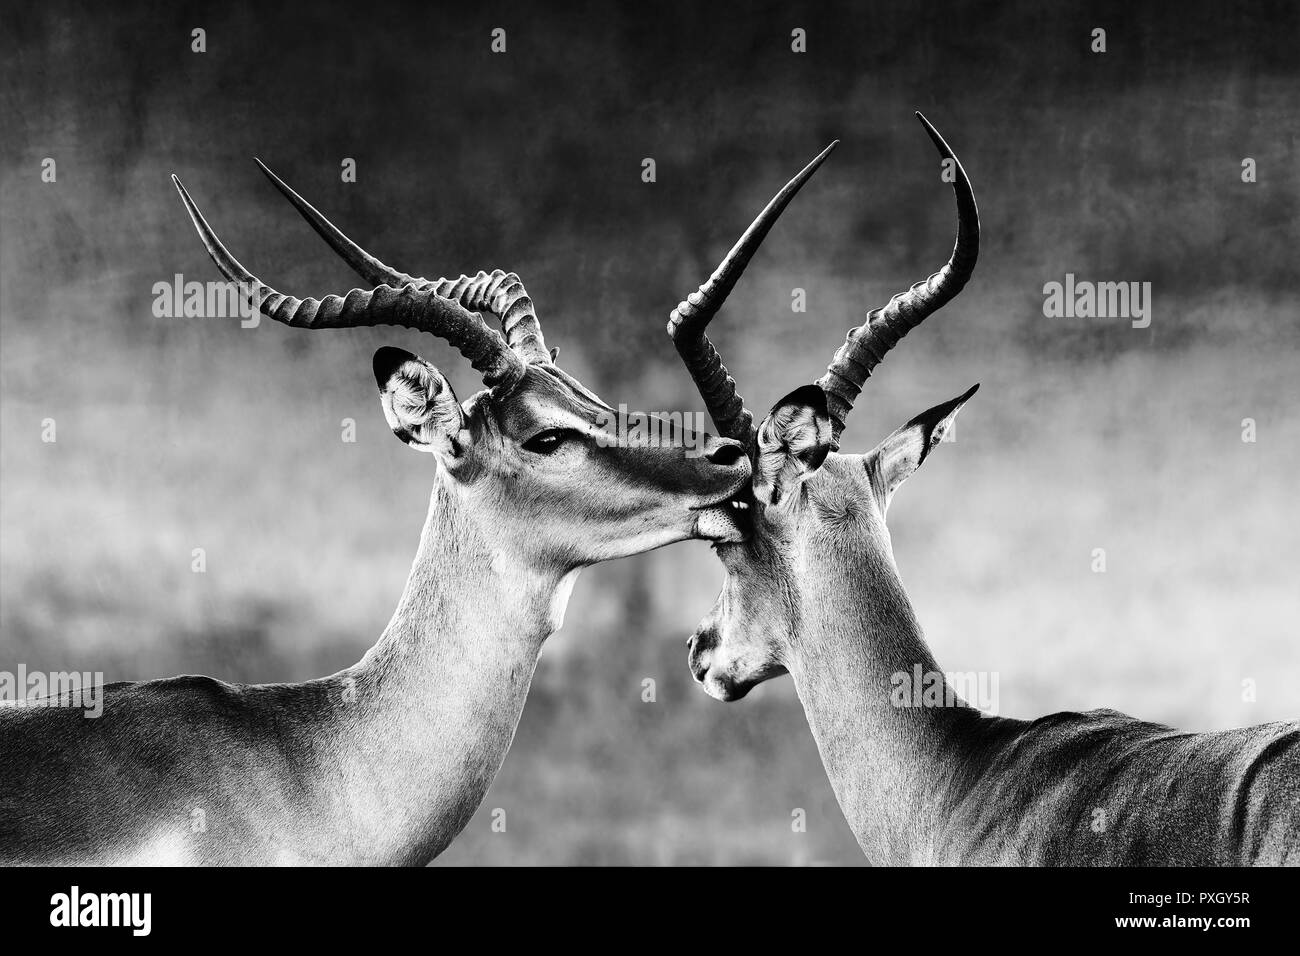 Impala (Aepyceros melampus) Zuneigung zwei männliche Impala ist in einem intimen Moment während einer Zeit der Schlacht, die Brunftzeit. Schwarz und Weiß. Stockfoto